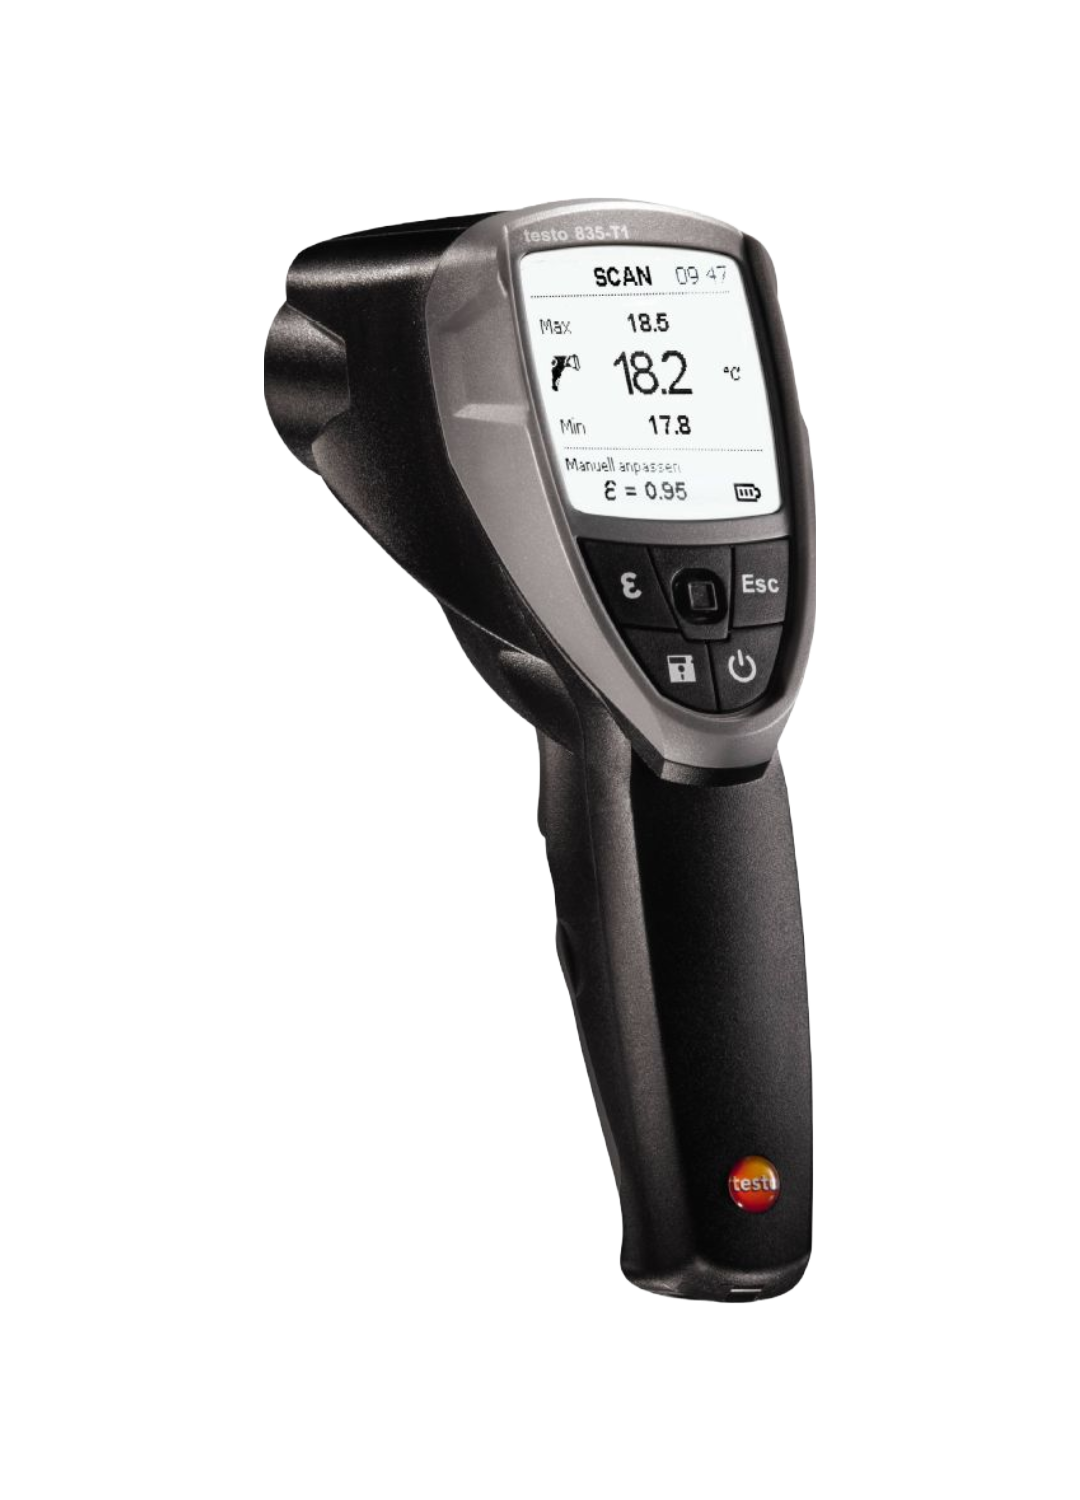 testo 835-T1 - Infrarot-Thermometer